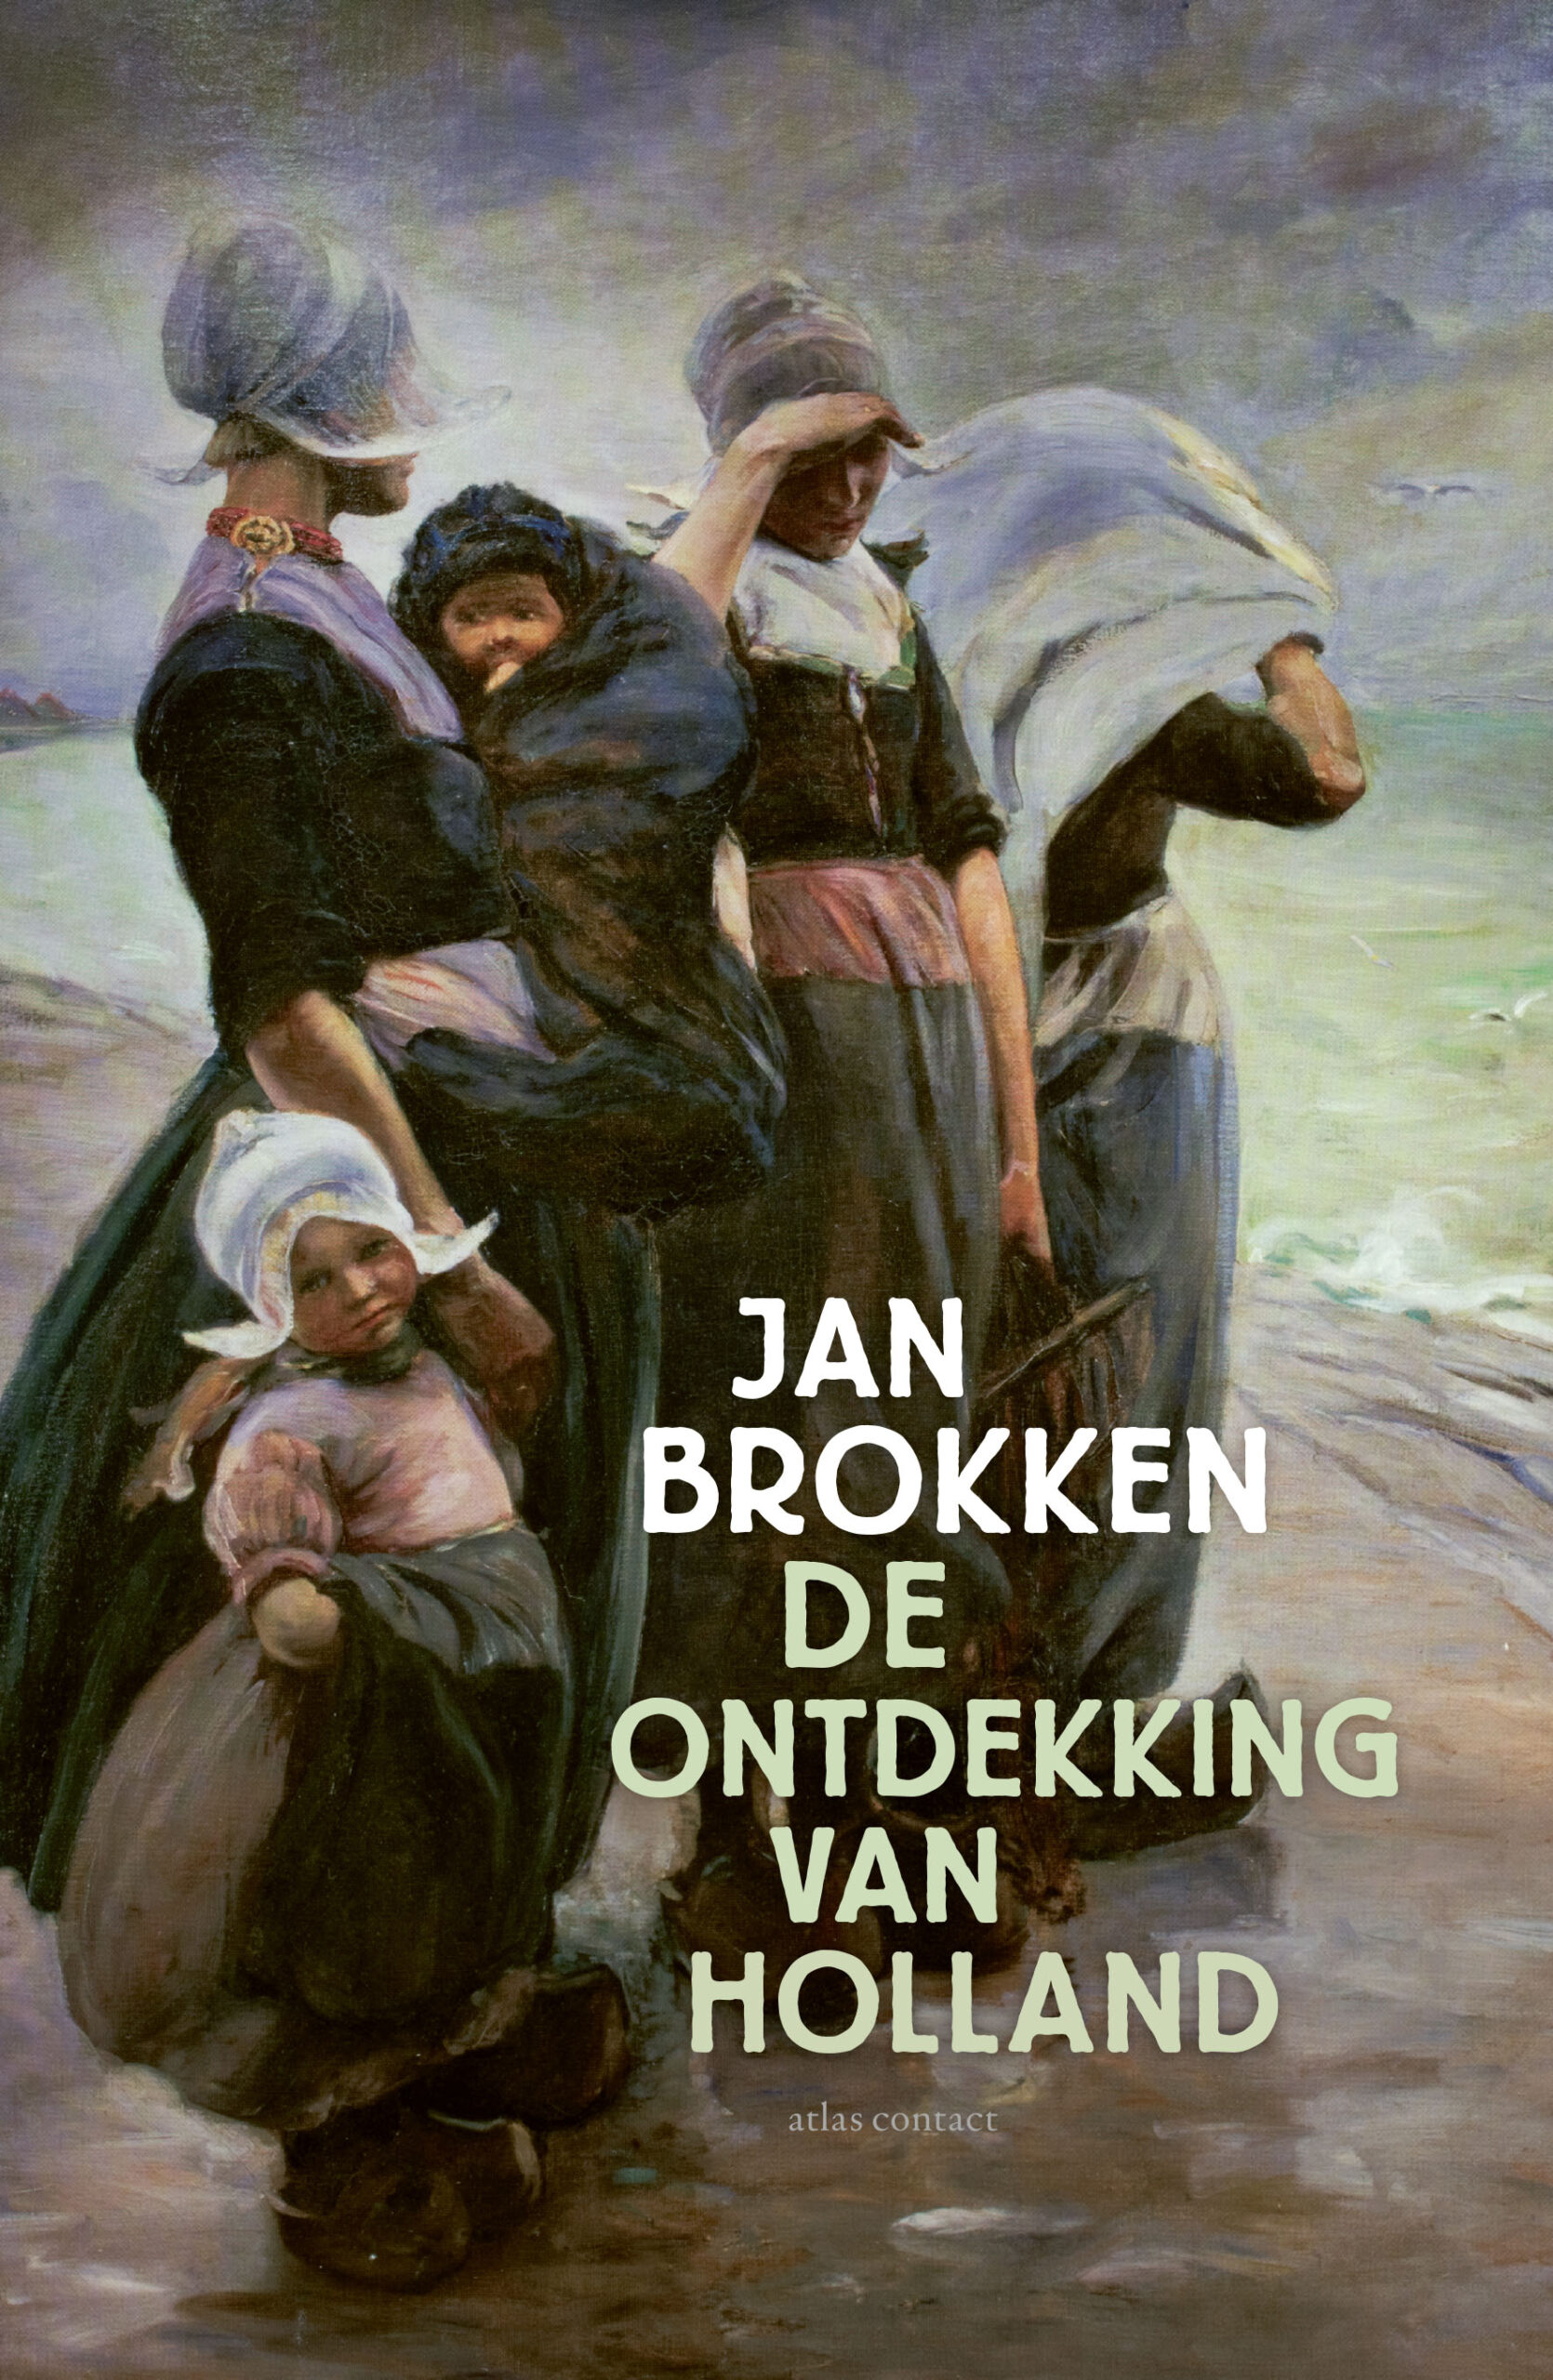 Jan Brokken over De ontdekking van Holland in Hilversum